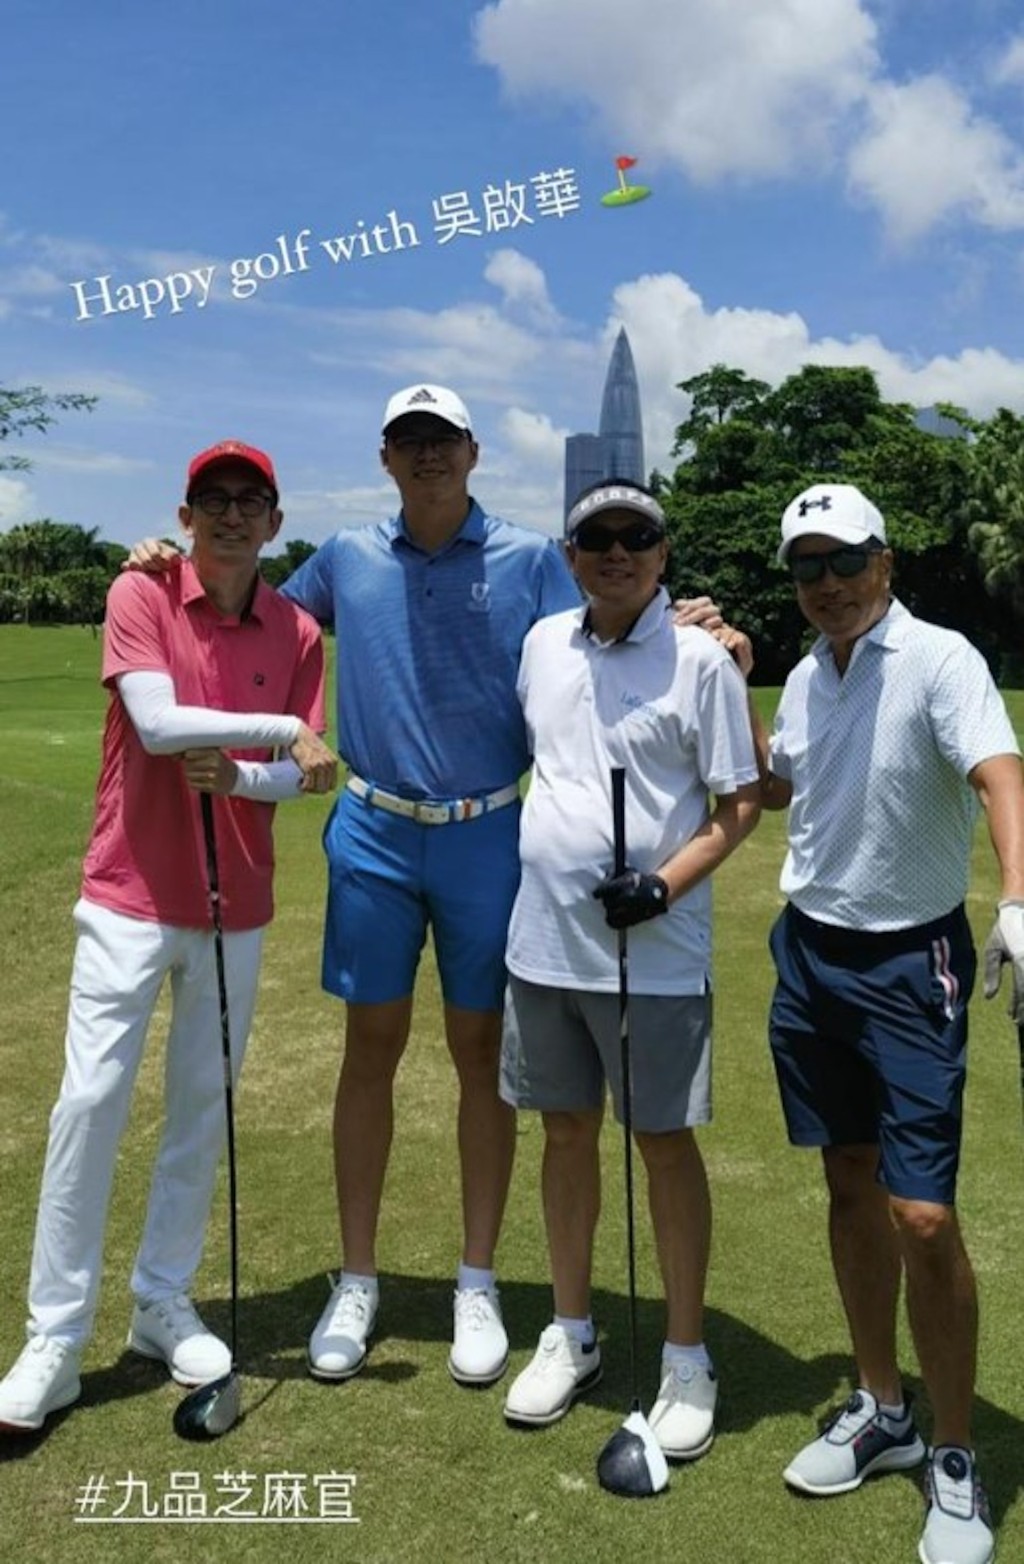 林浩贤（左二）同吴启华（左）打高尔夫球兼合照，1.82米的吴启华站在他身旁仍矮半个。